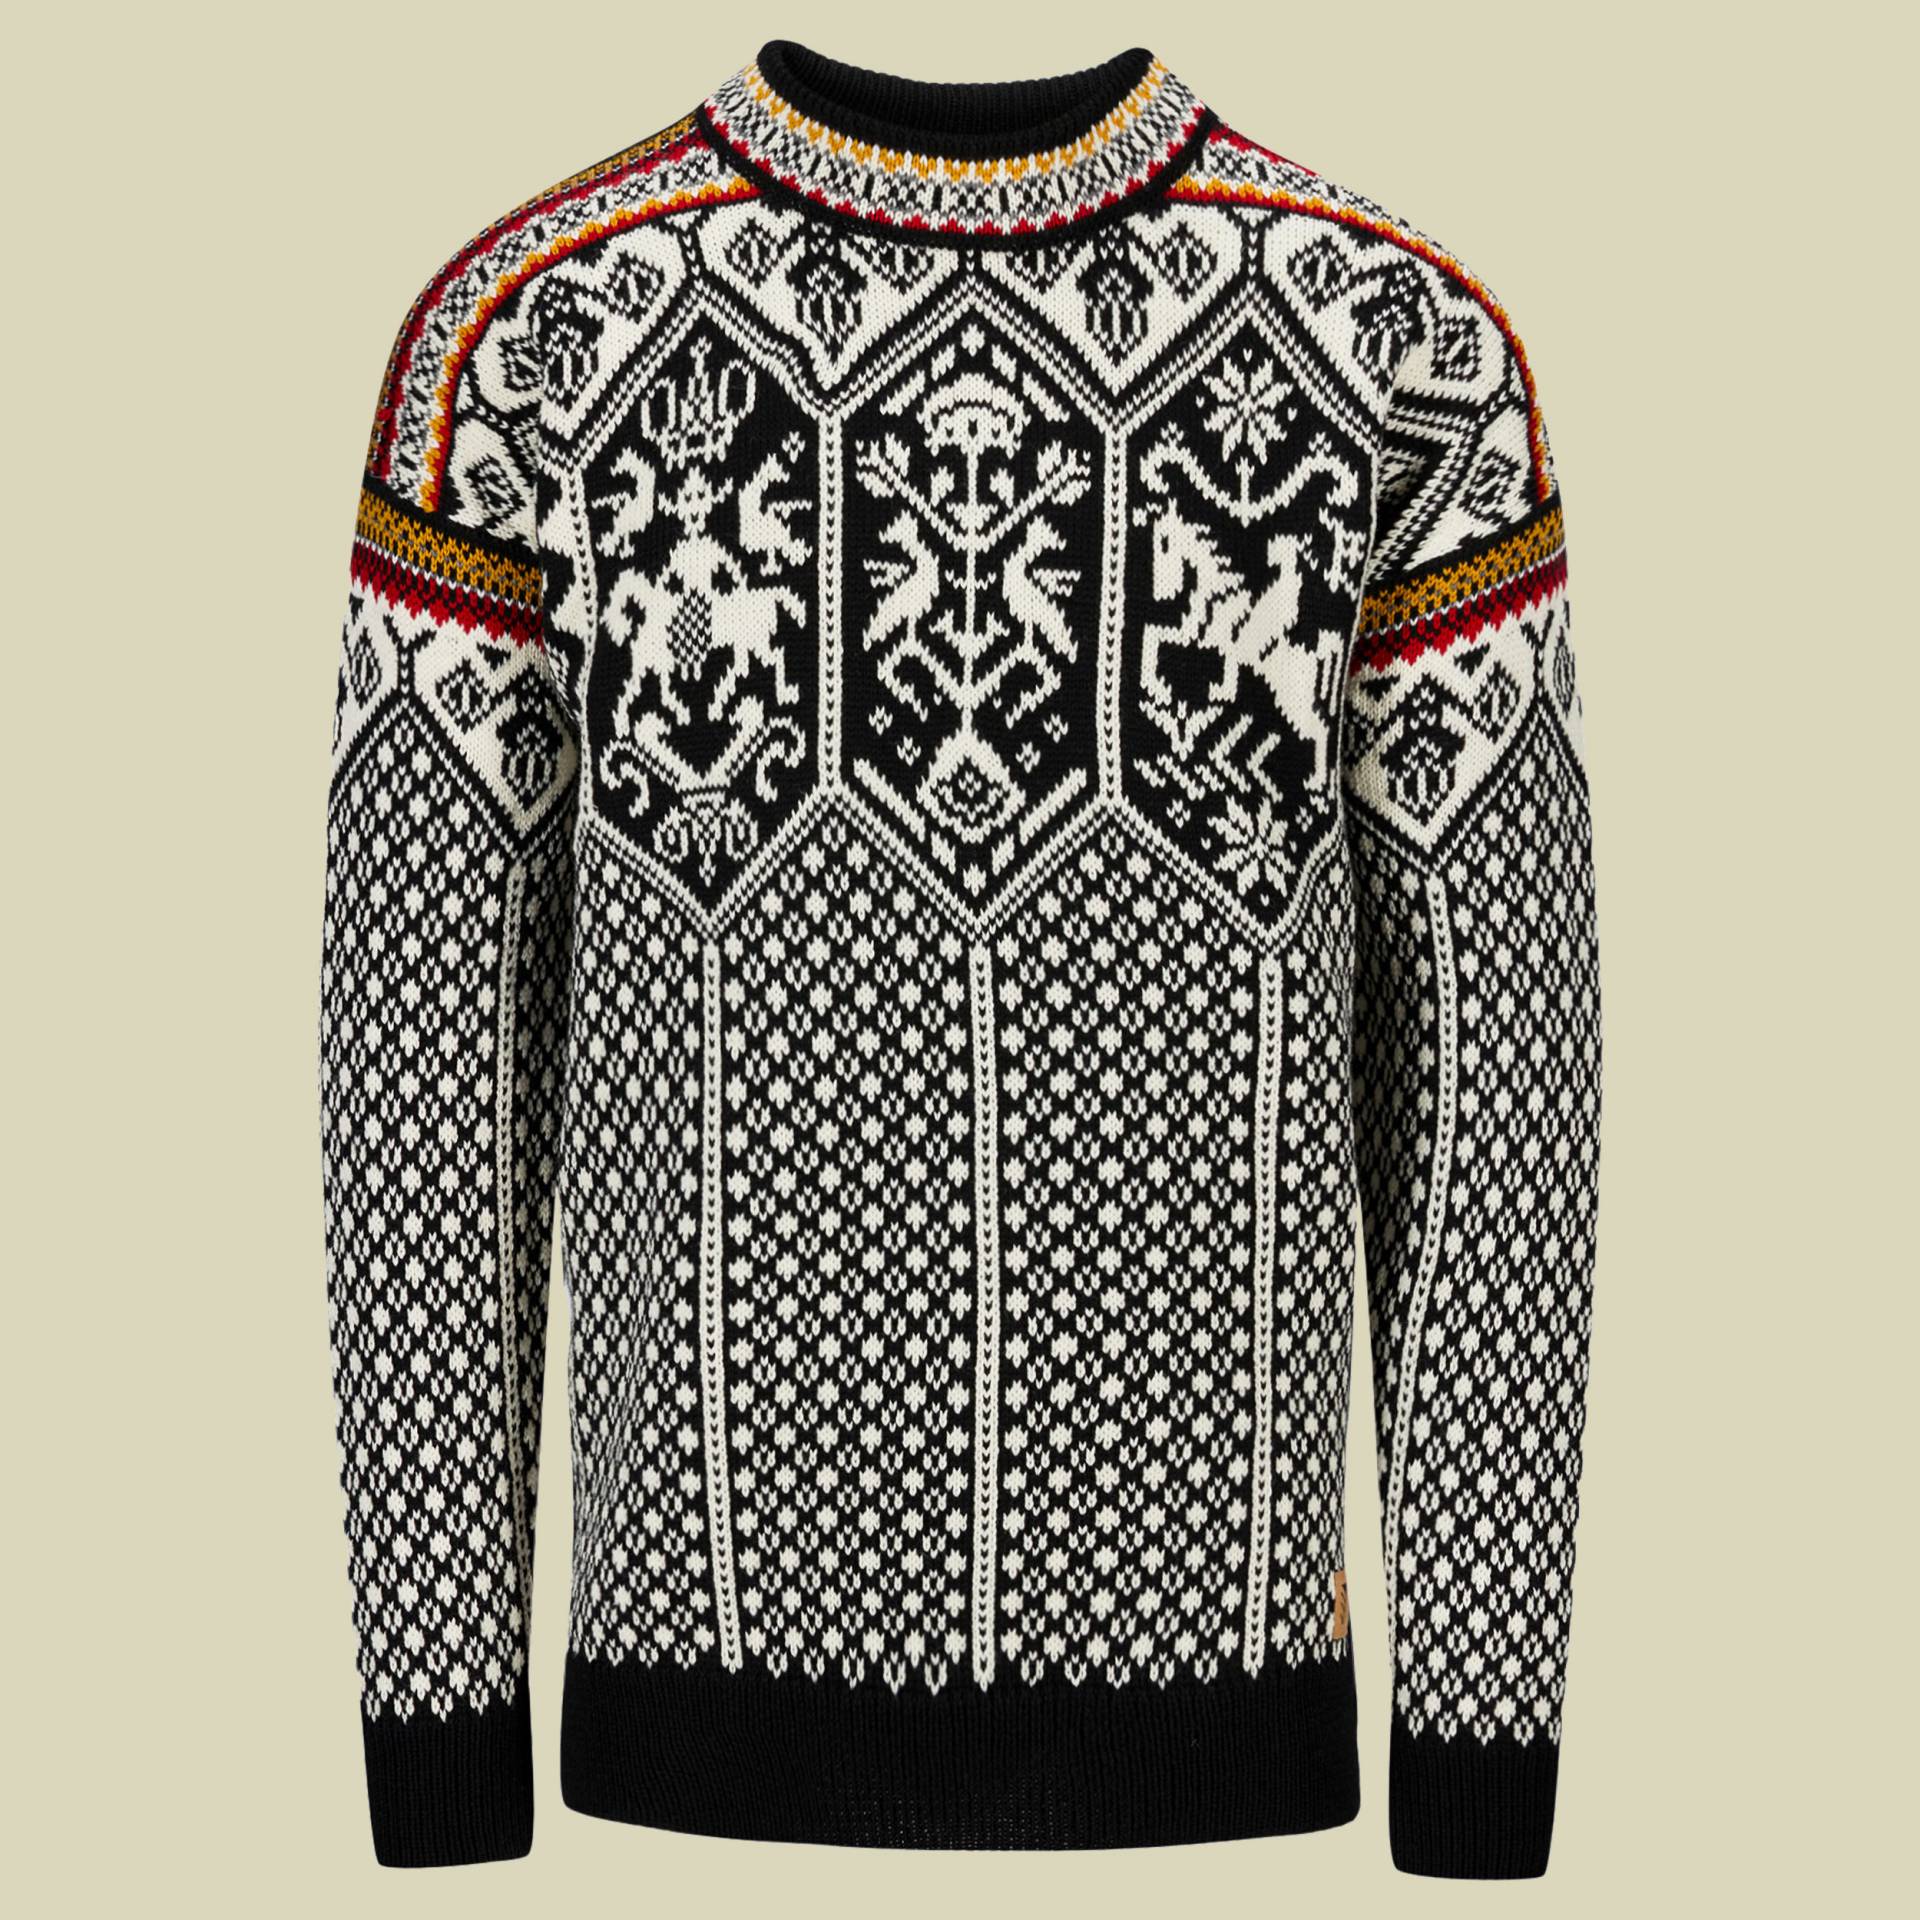 1994 Sweater Men Größe M  Farbe black/off white/mustard von Dale of Norway